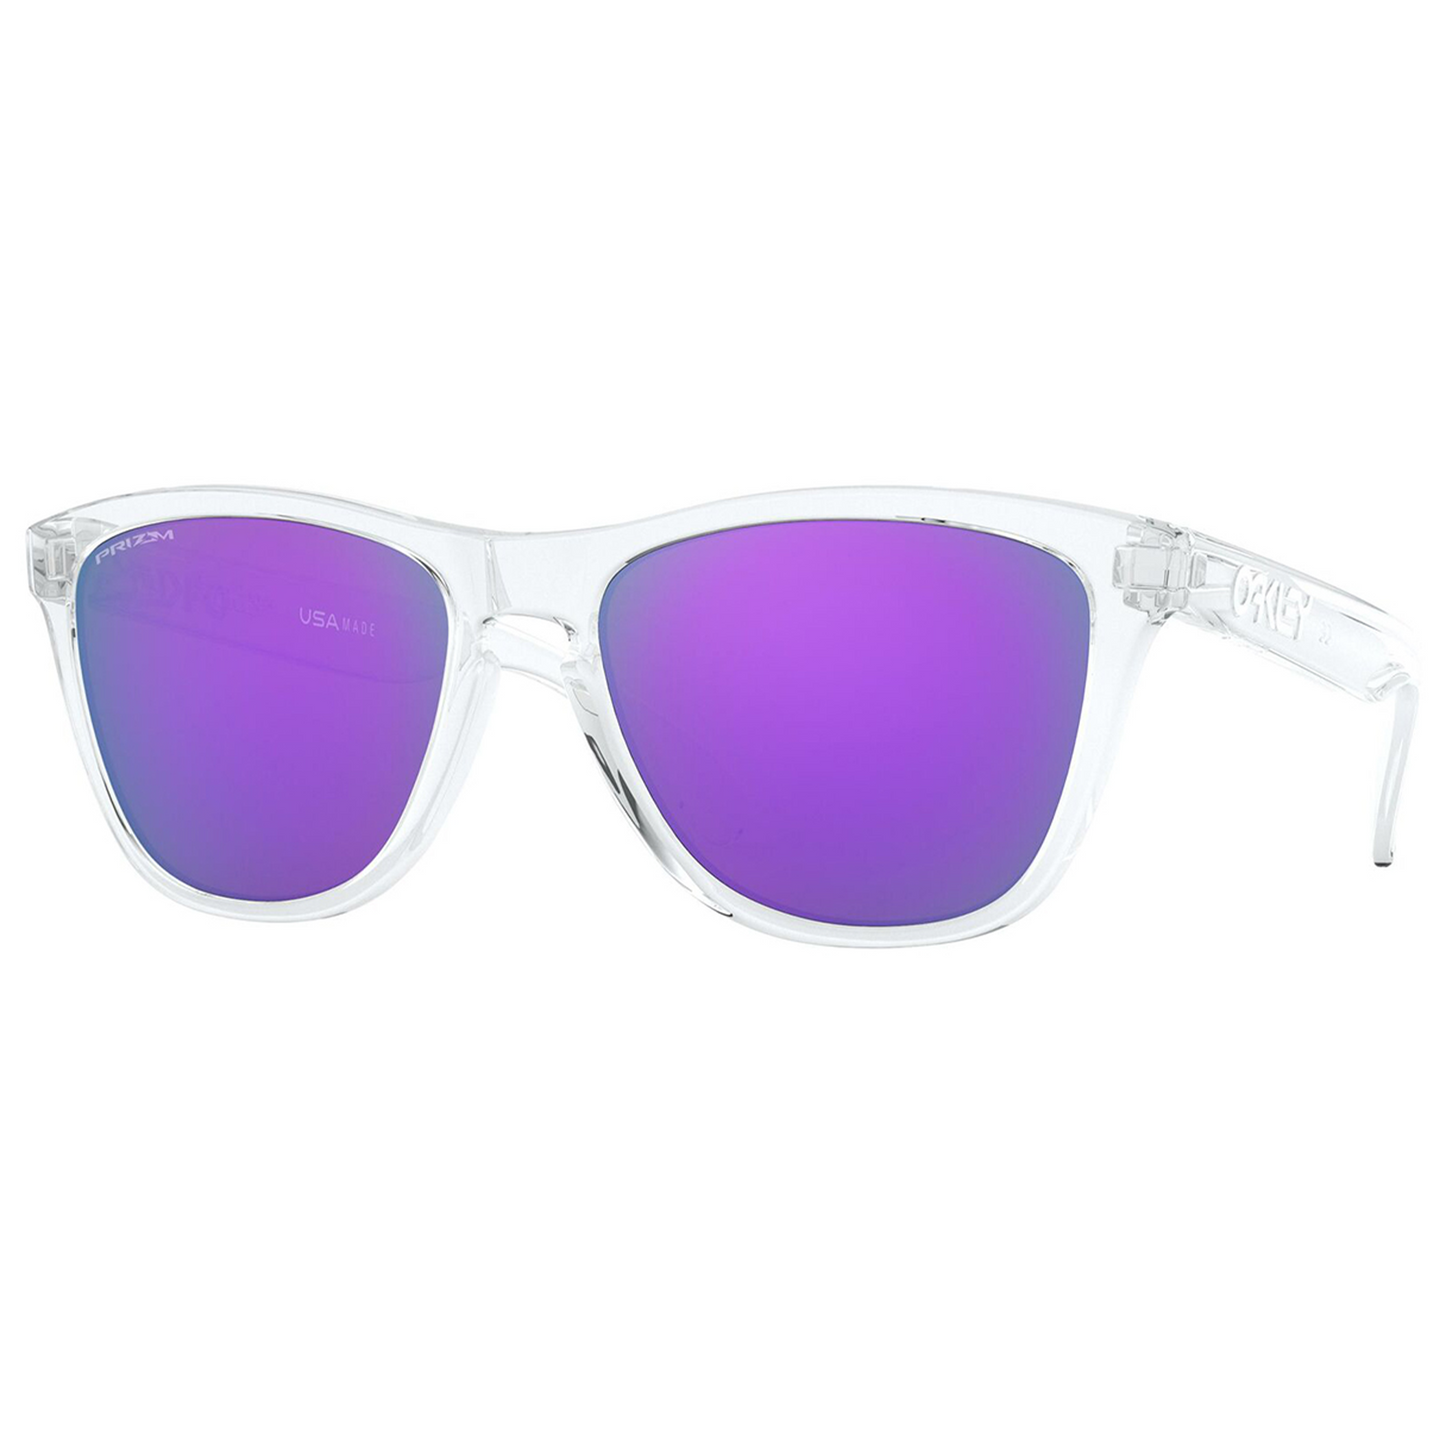 Oakley Frogskins Sunglasses (Polished Clear) Prizm Violet Lens - Free Case